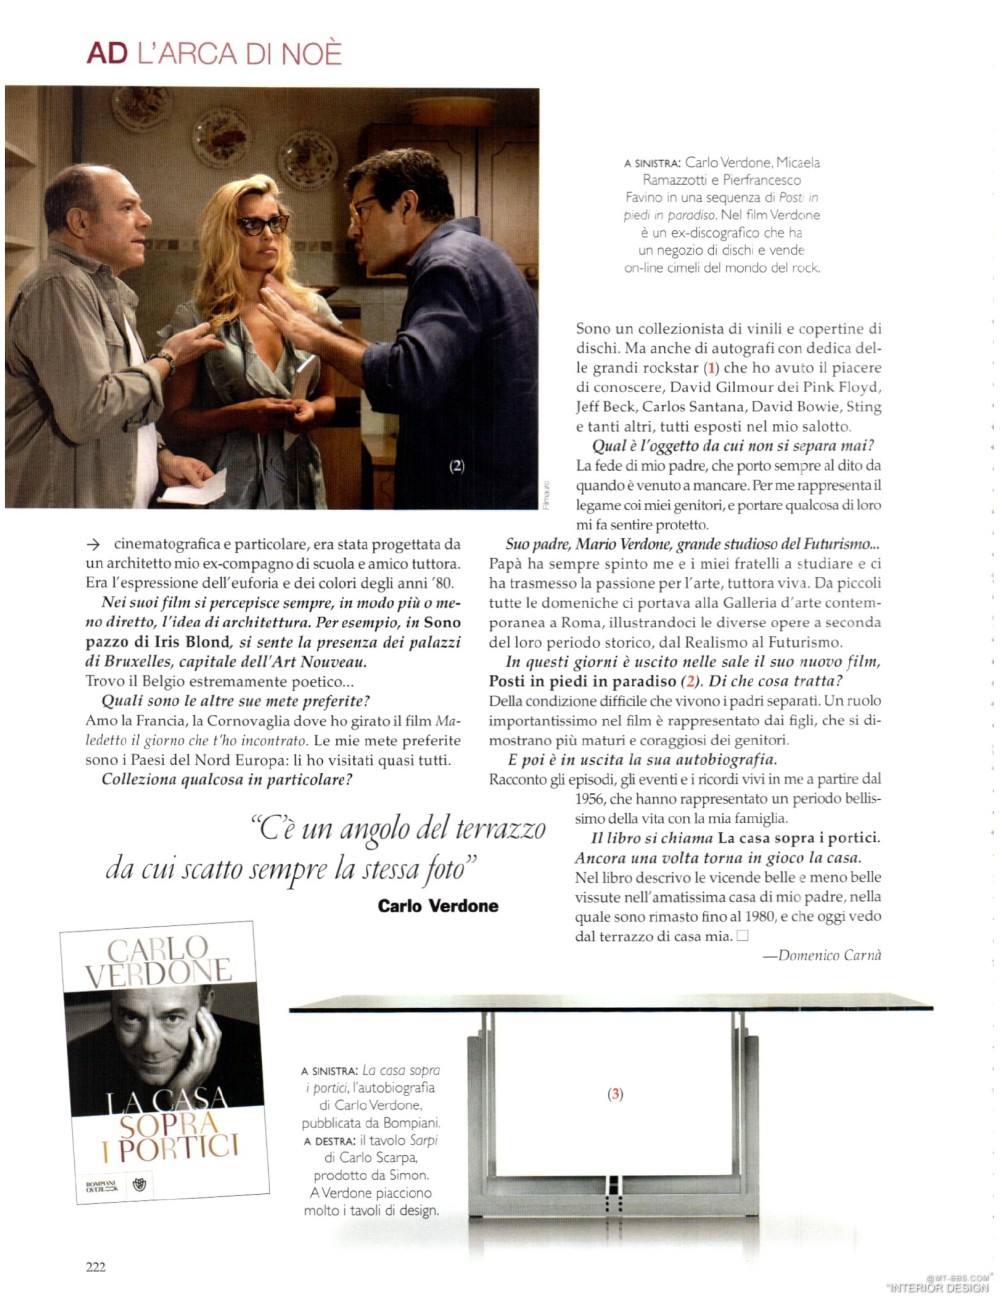 意大利AD 杂志 2012年全年JPG高清版本 全免（上传完毕）_0224.jpg